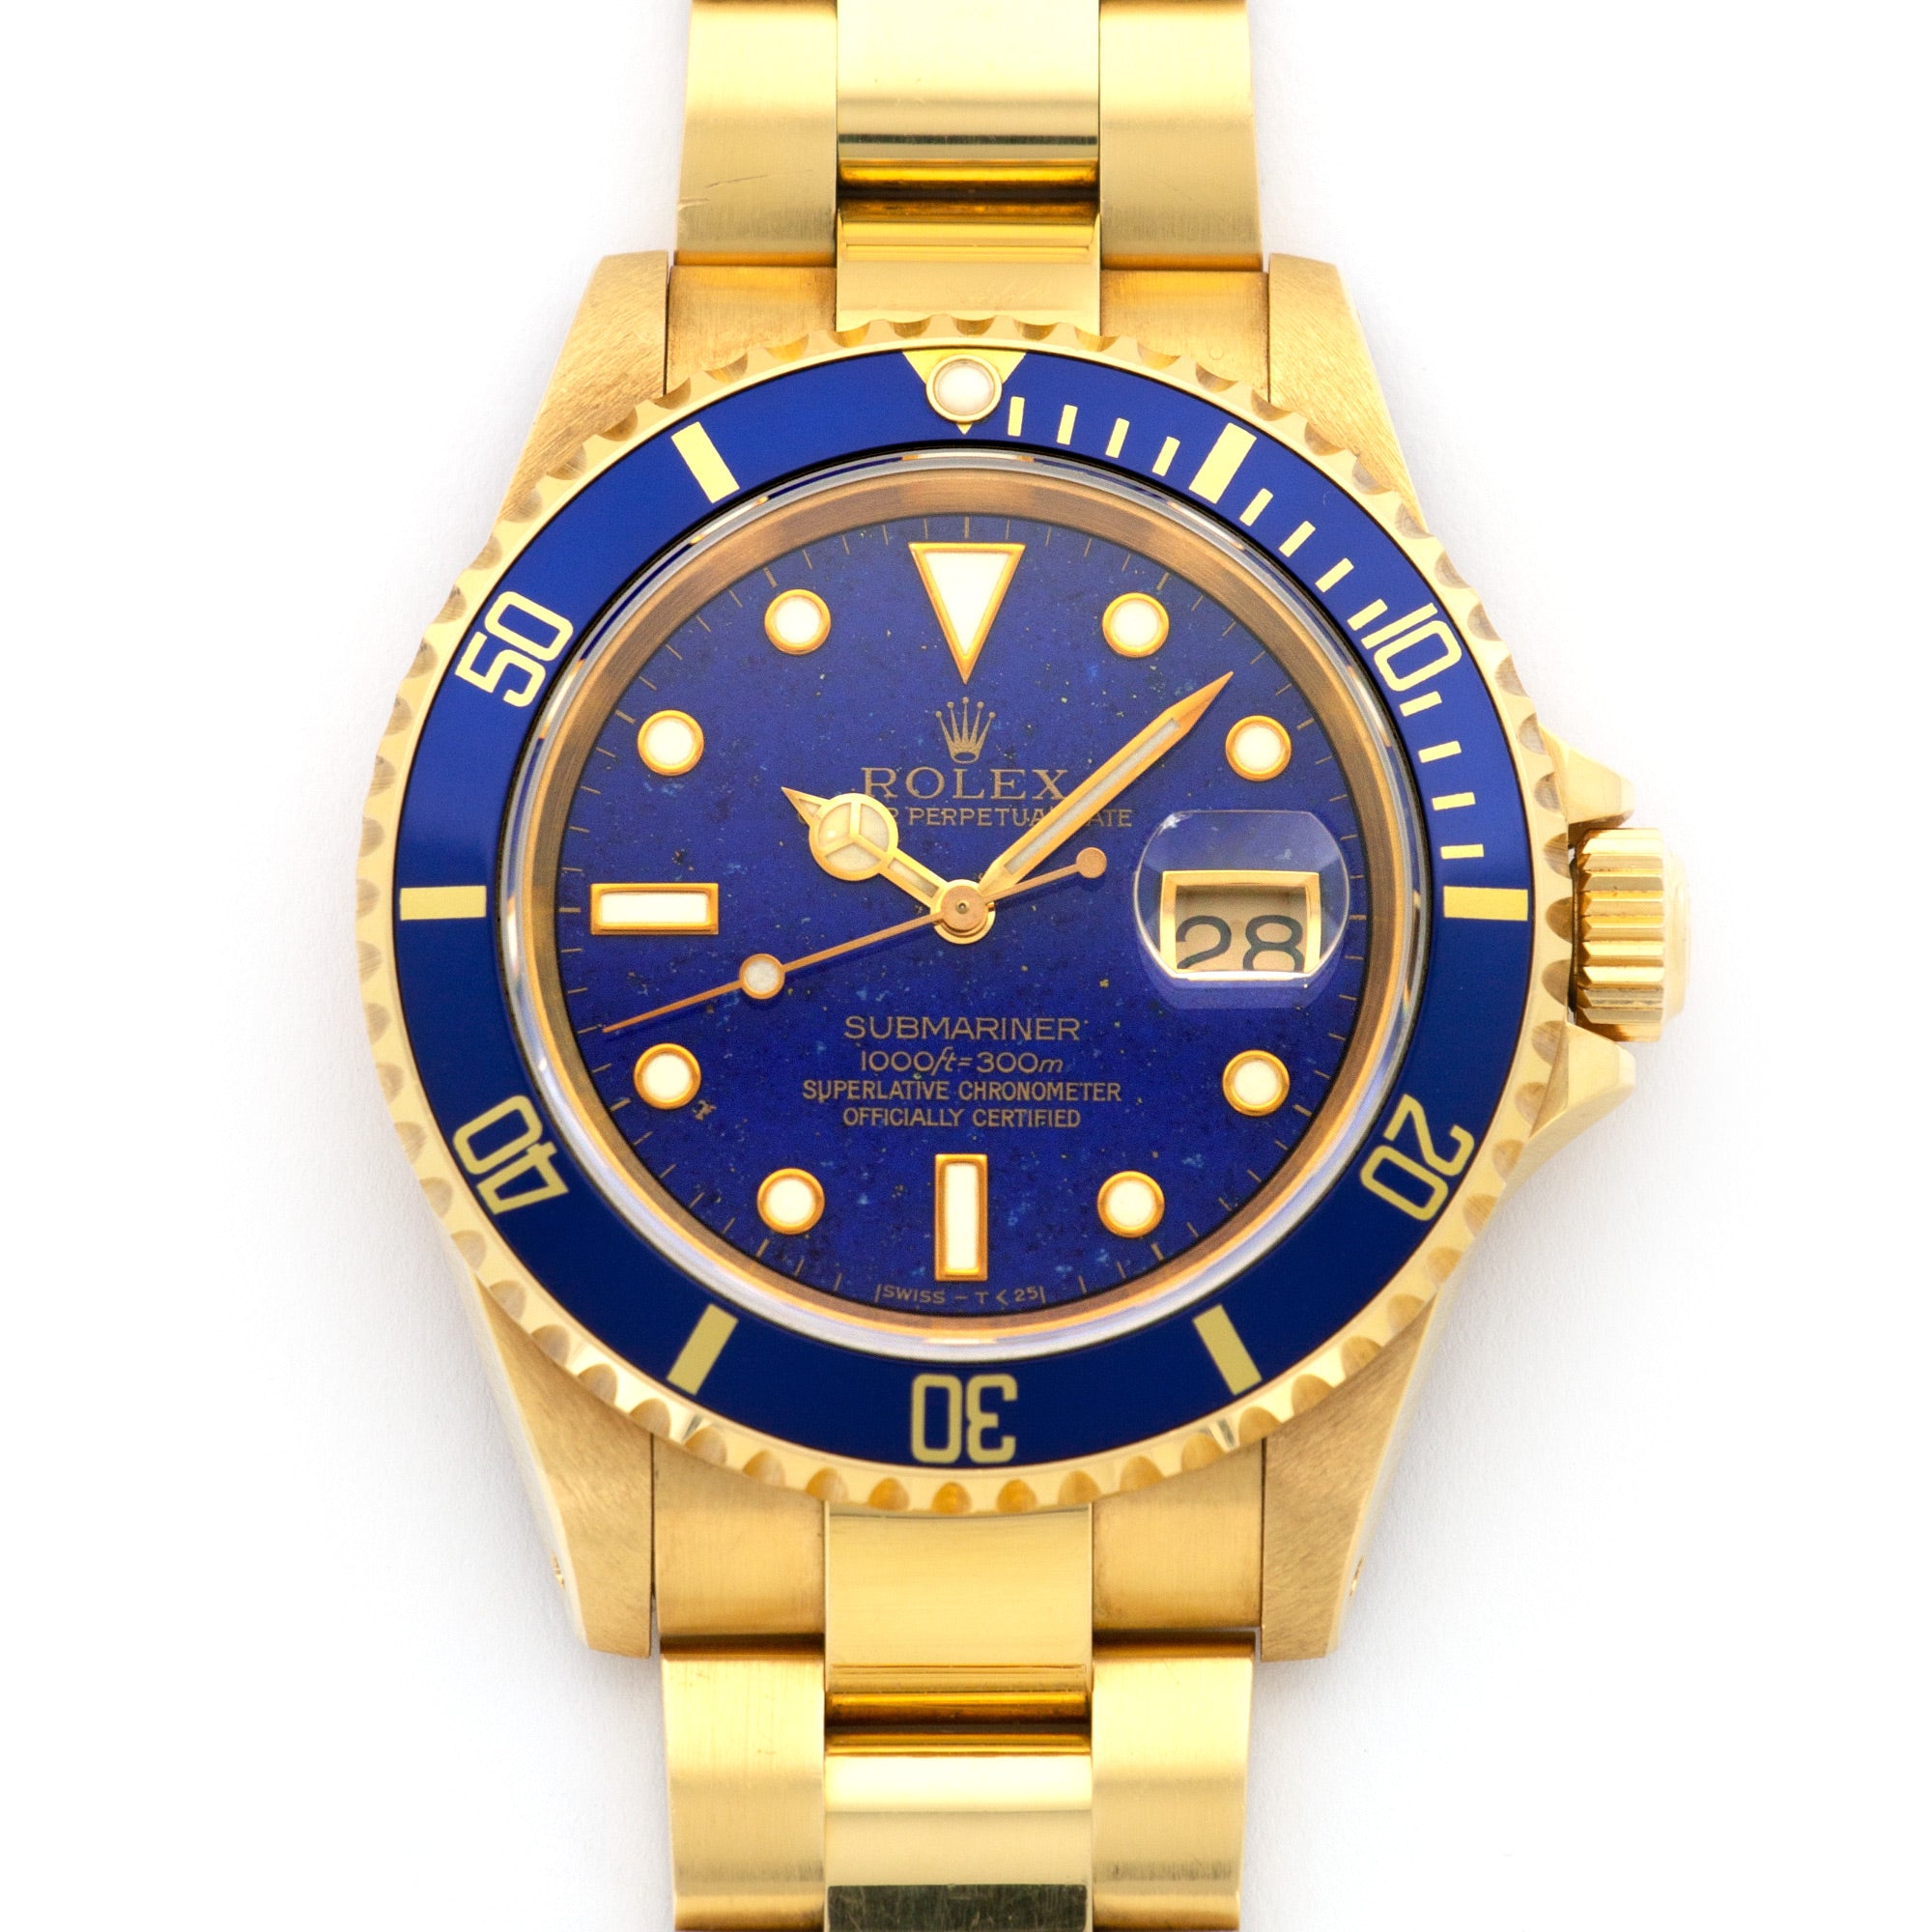 Rolex Submariner 18k – The Watches